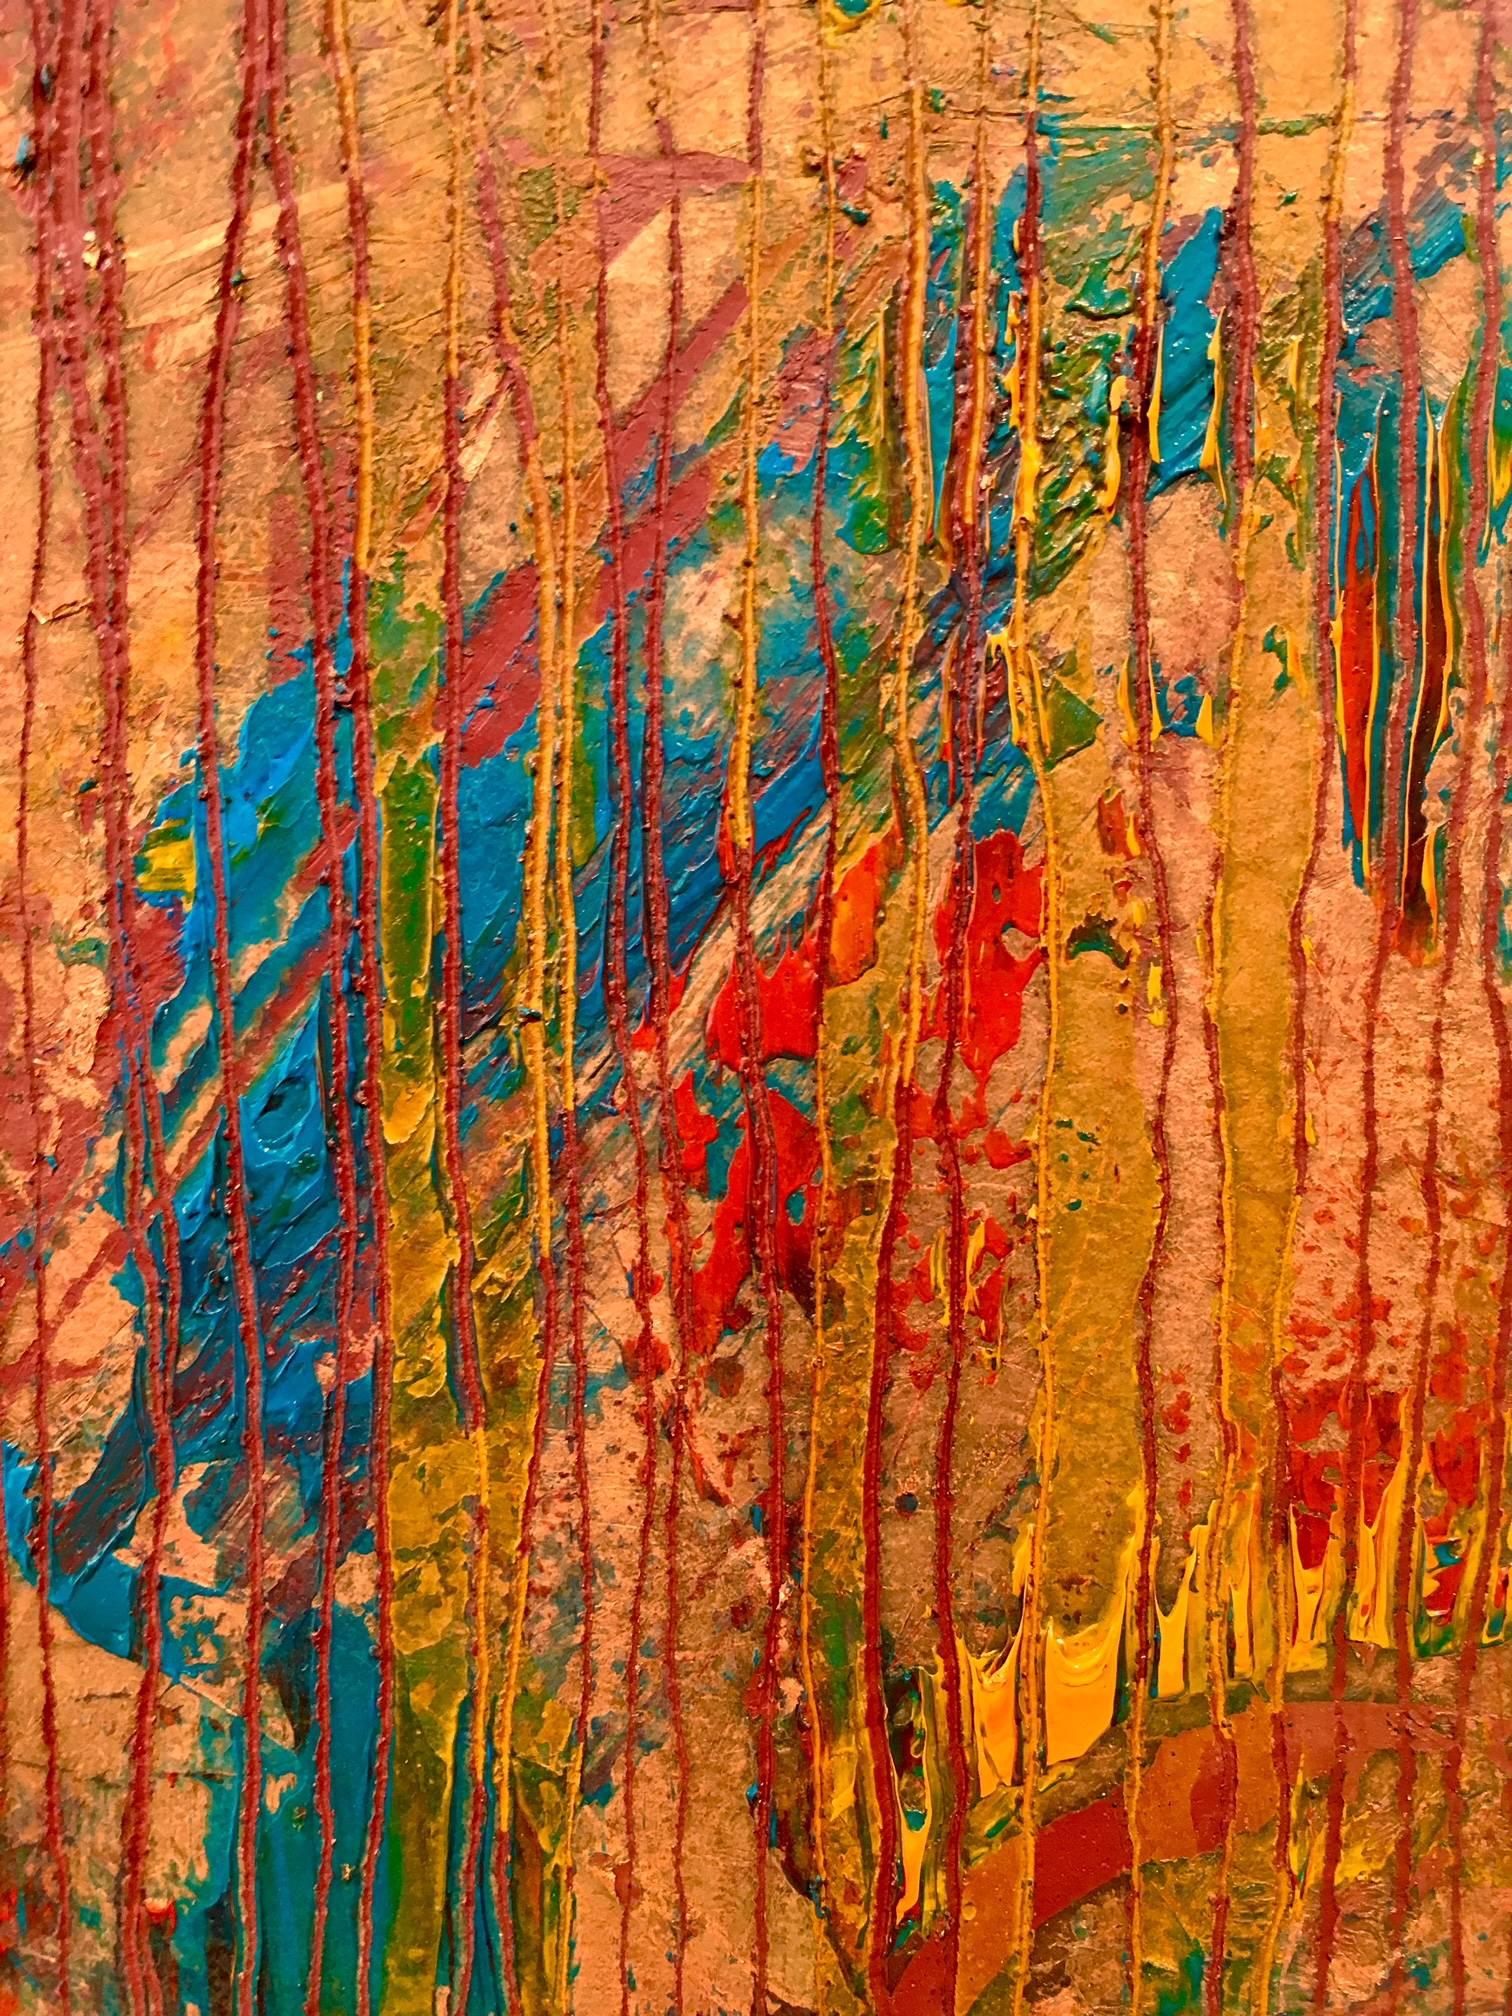 Zusammensetzung in Rot/Öl und Blattmetall (Gold), Abstract Painting, von Frédéric Choisel